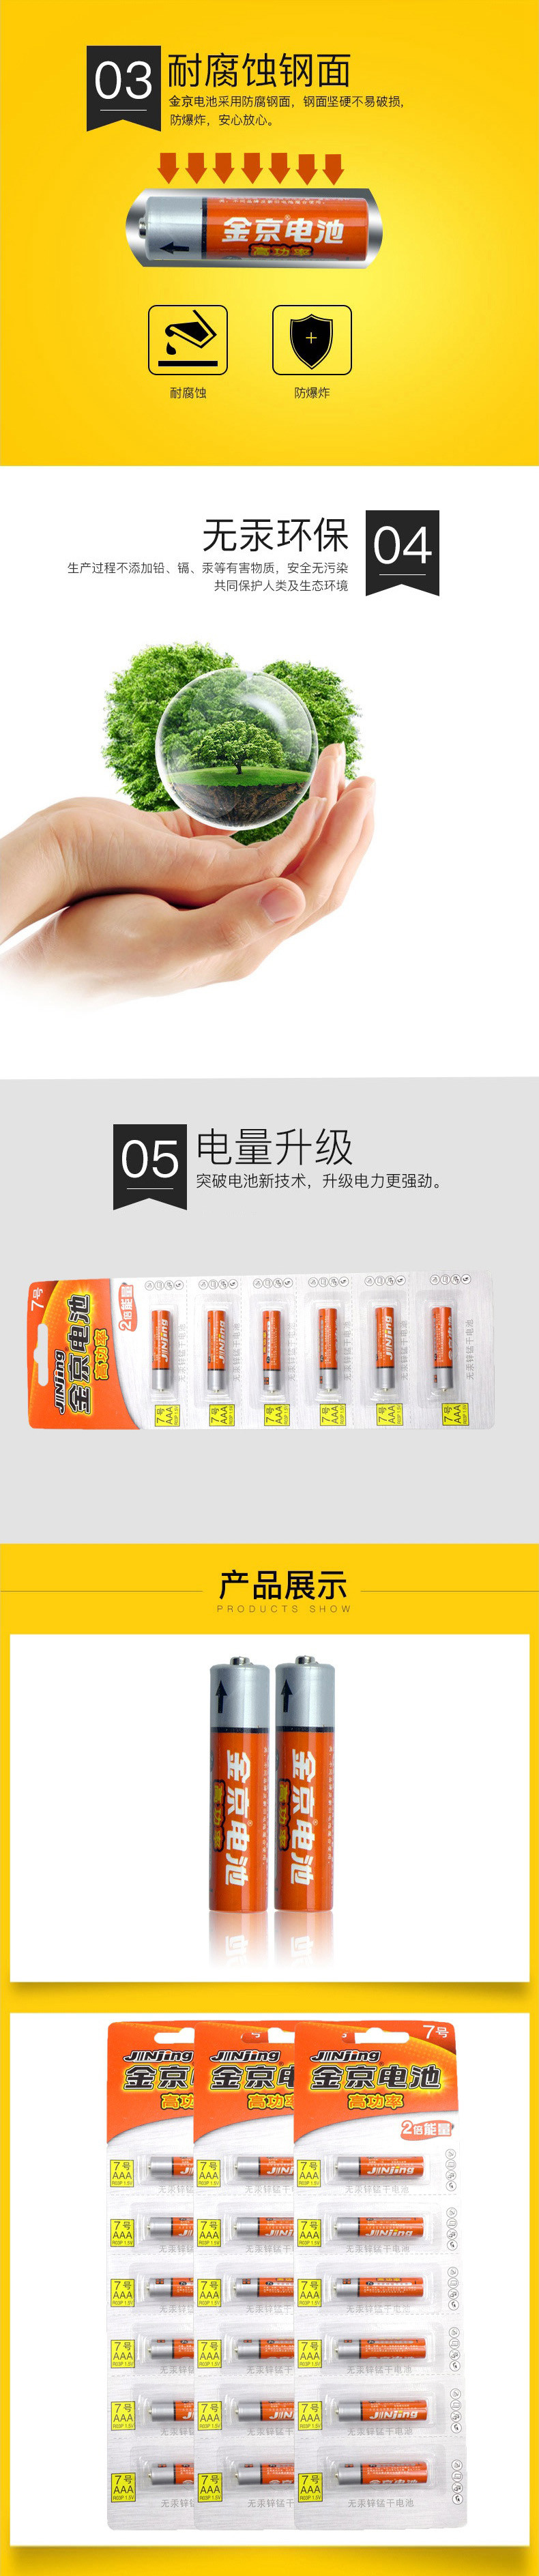 金京 7号电池 高功率无汞锌锰电池1.5V AA2倍能量 橙色8块